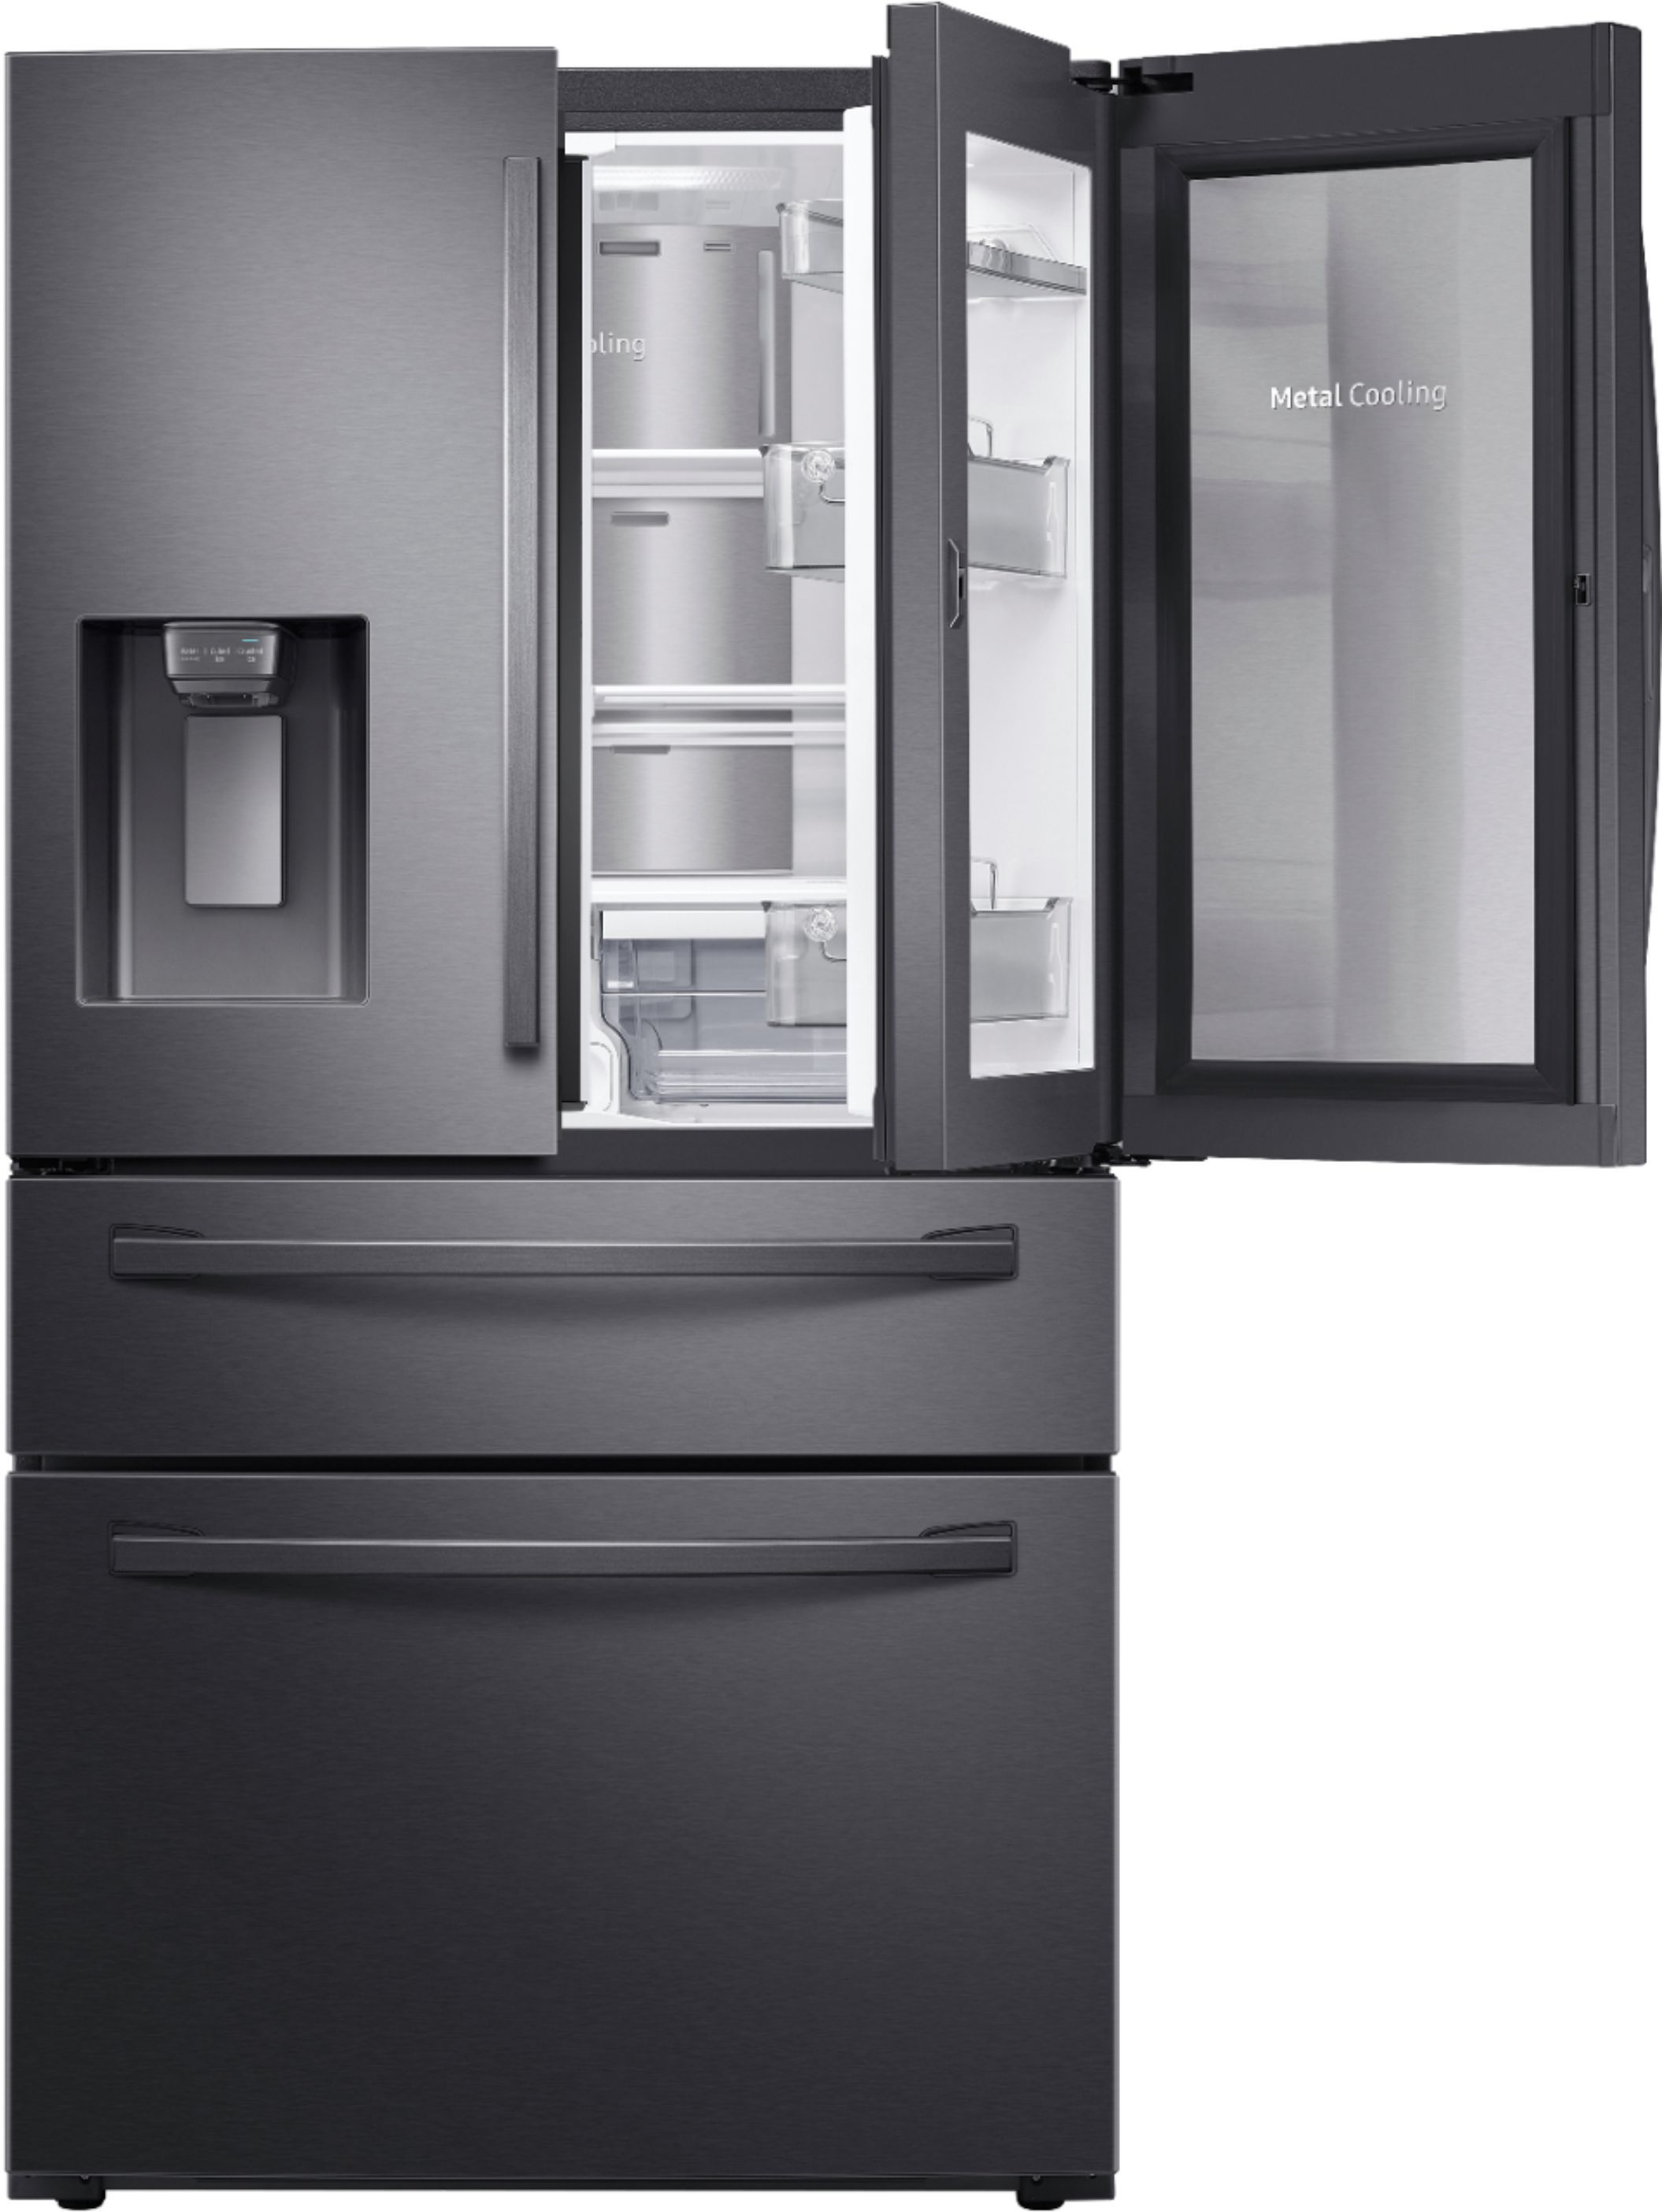 Samsung 22.4 cu. ft. 4-Door French Door Counter Depth Refrigerator with Food Showcase Fingerprint... | Best Buy U.S.